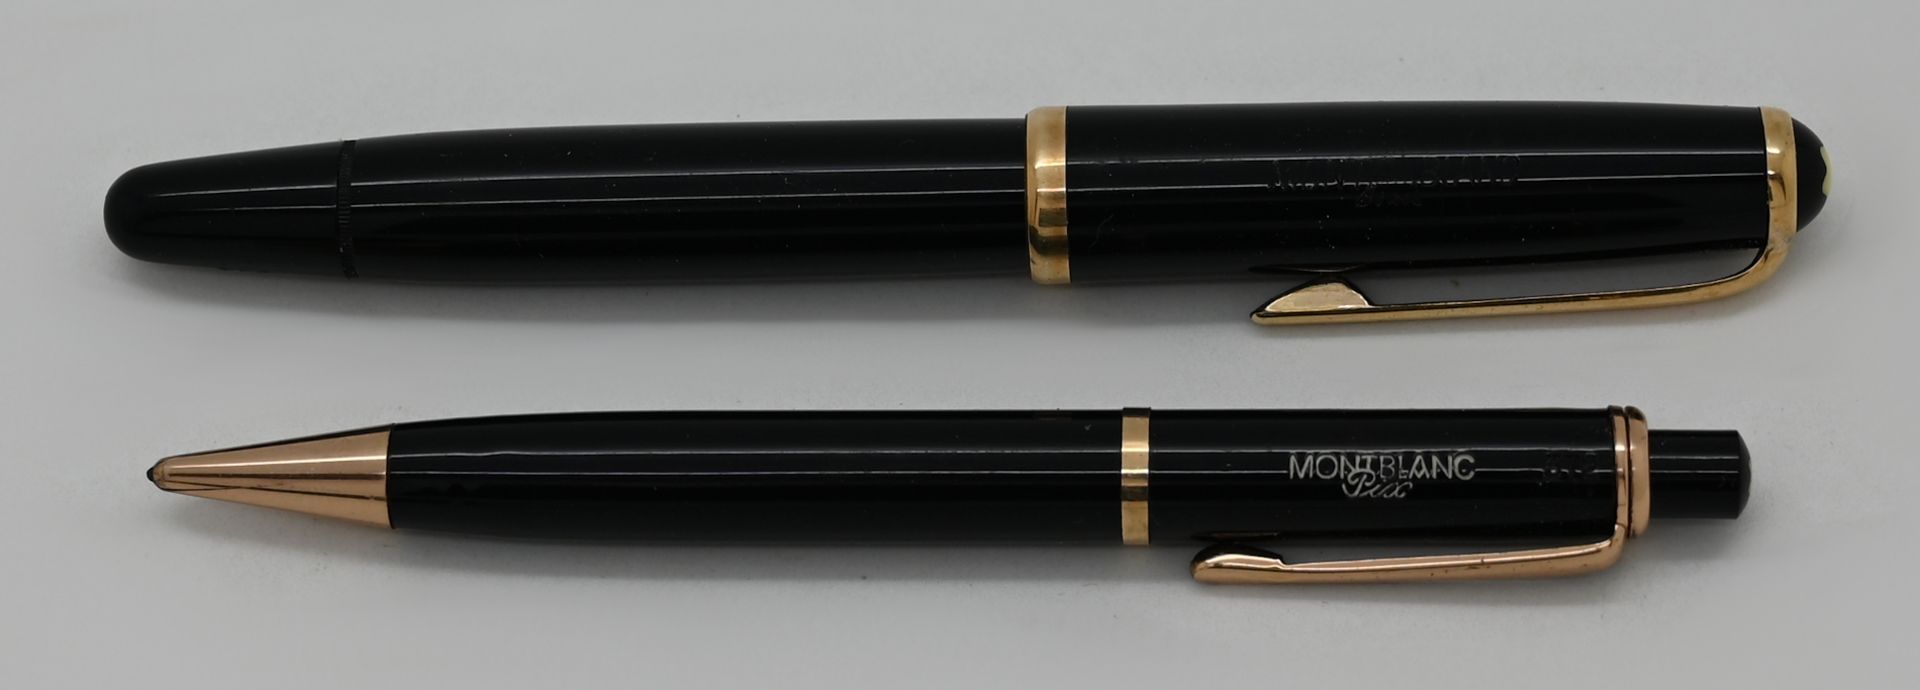 1 Füller, Feder GG 14ct., 1 Schreibgerät, jeweils MONTBLANC, jeweils Gsp. in 1 Originaletui, jeweils